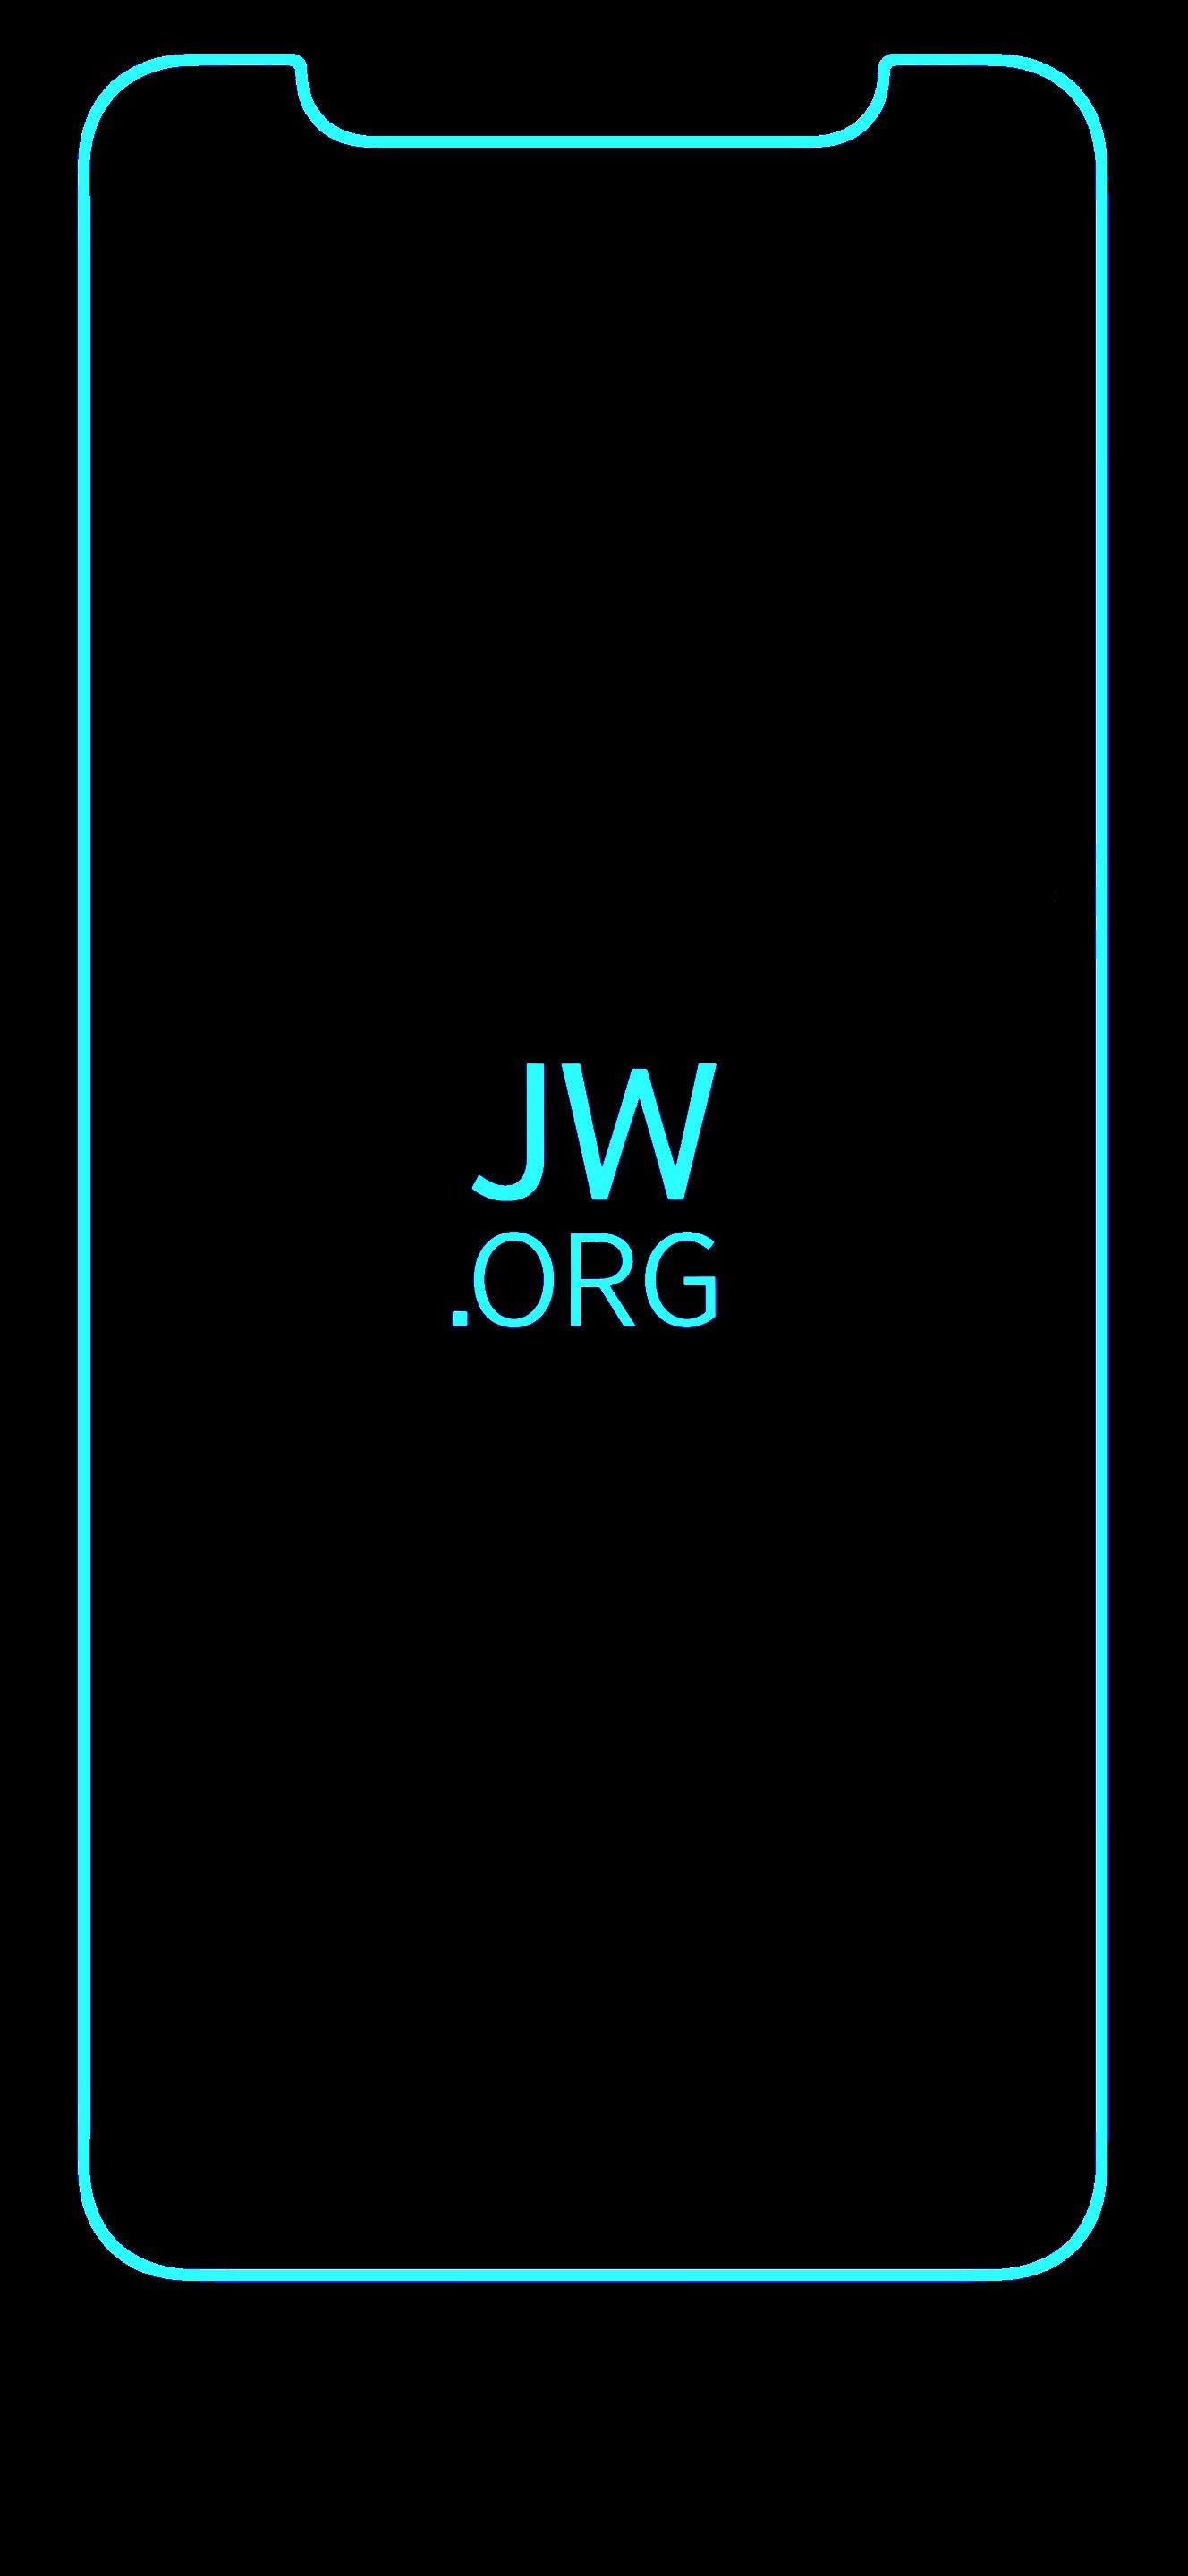 jw.org wallpaper cyan. Jw.org, Wallpaper, Cyan